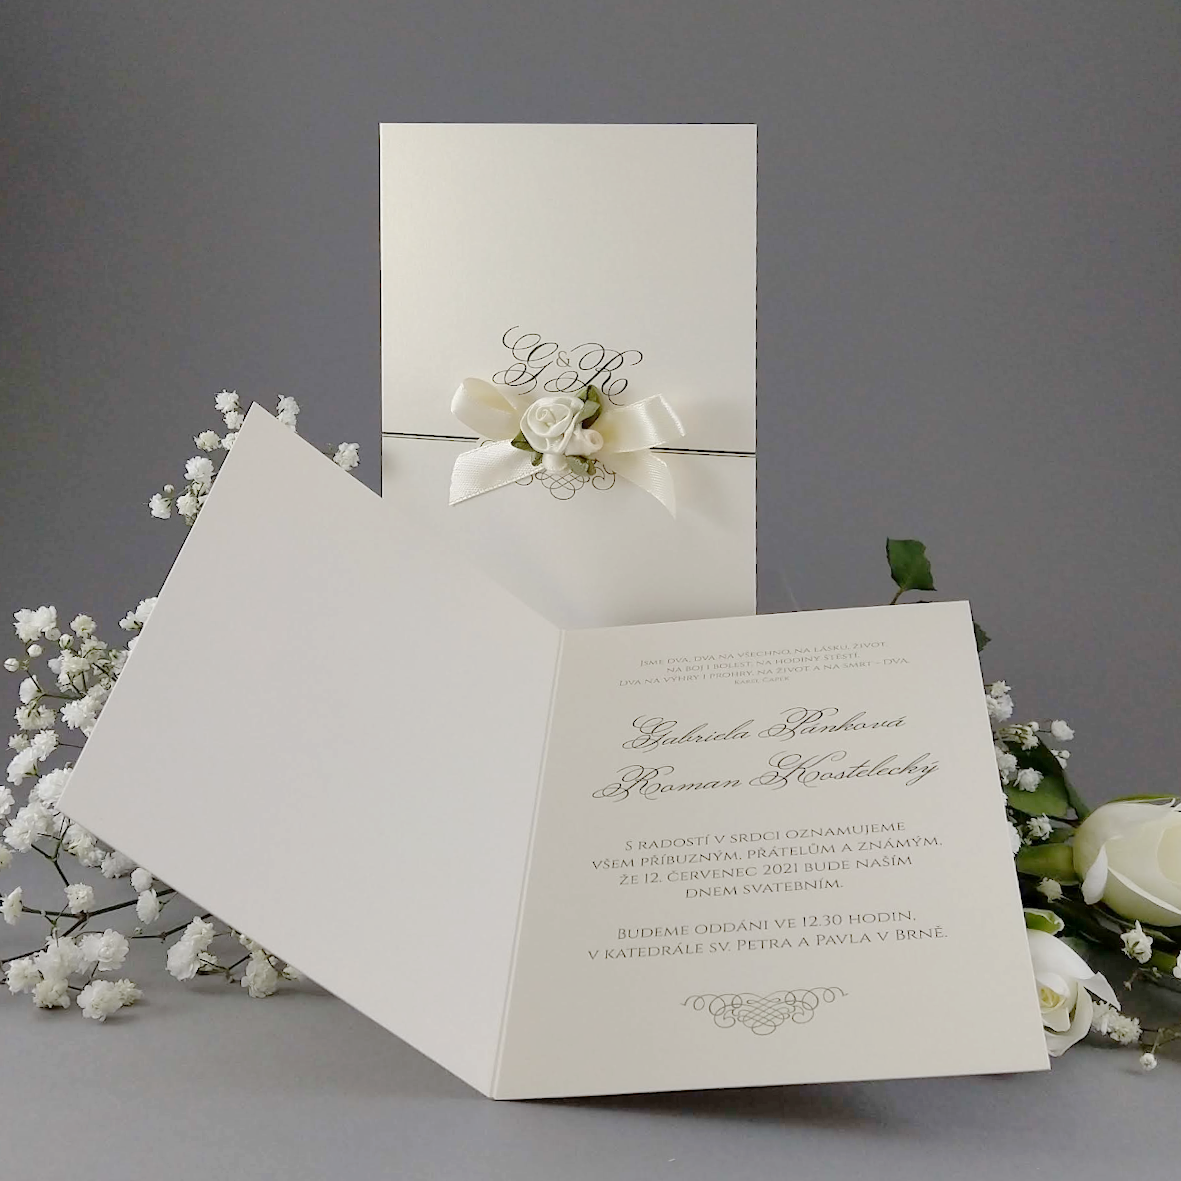 Svatební oznámení s textilní aplikací z atlasové stuhy a romantických růžiček.